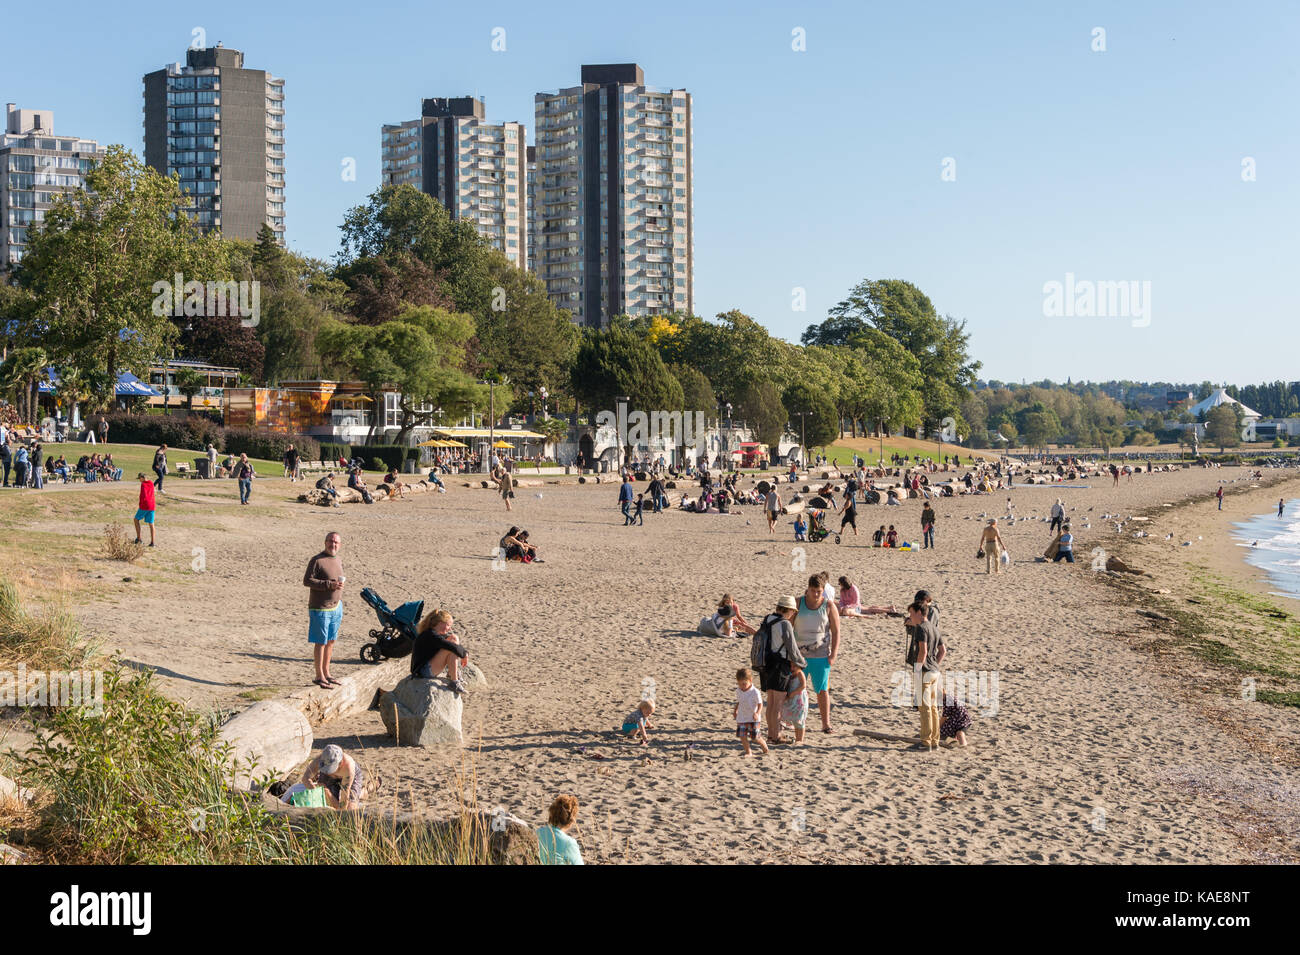 Personen, die ein warmer und sonniger Tag in Vancouver English Bay Beach im Sommer. Vancouver, British Columbia, Kanada - 14 September 2017. Stockfoto